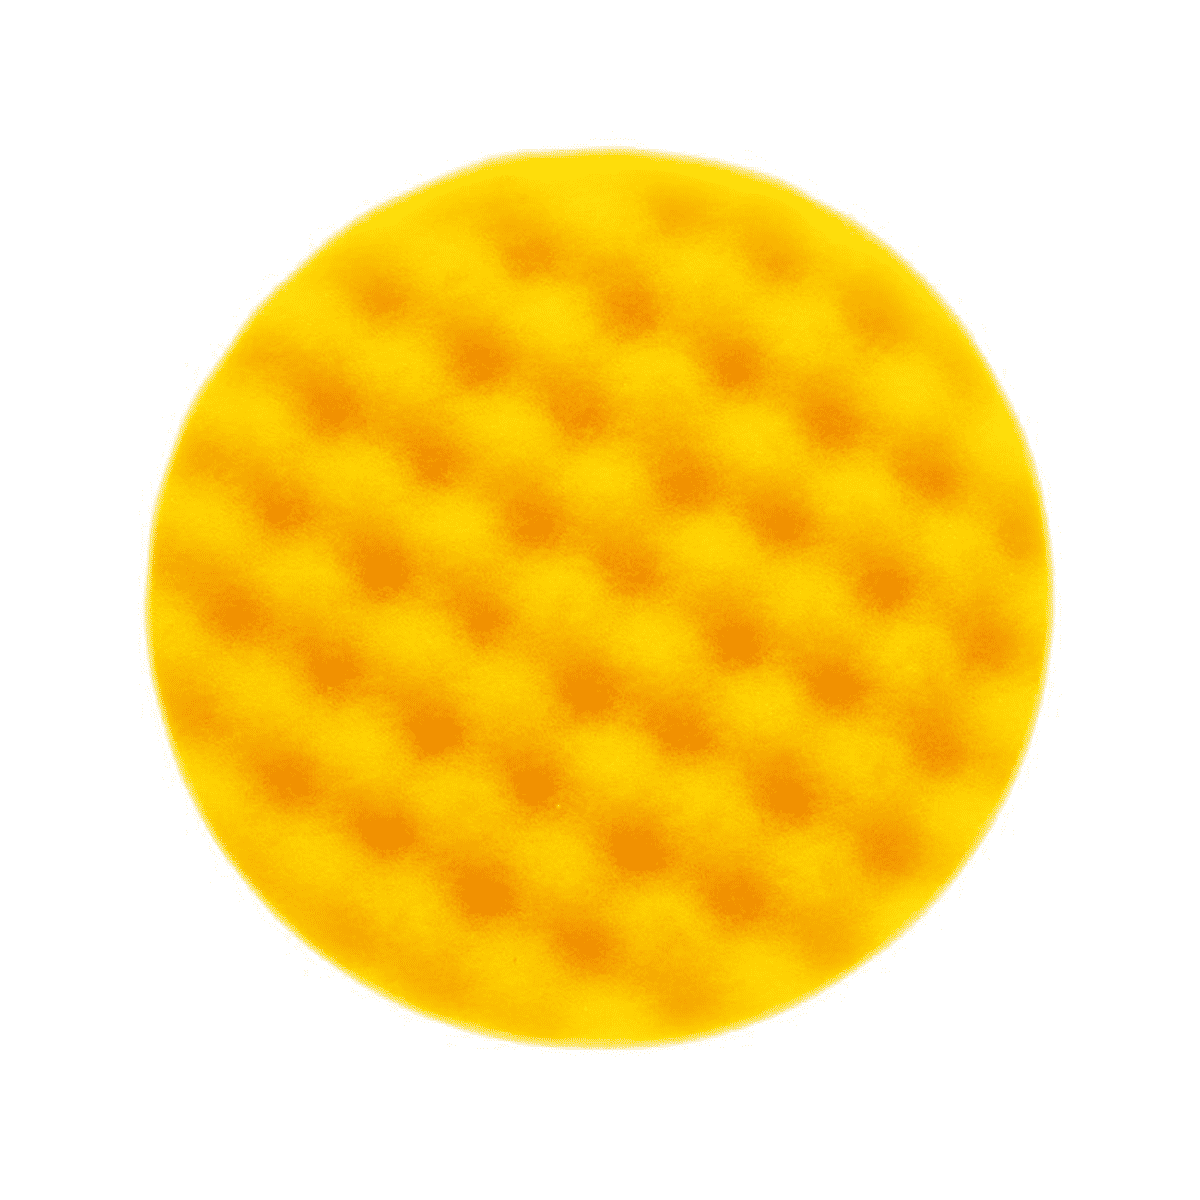 Рельефный поролоновый полировальный диск 85мм, жёлтый